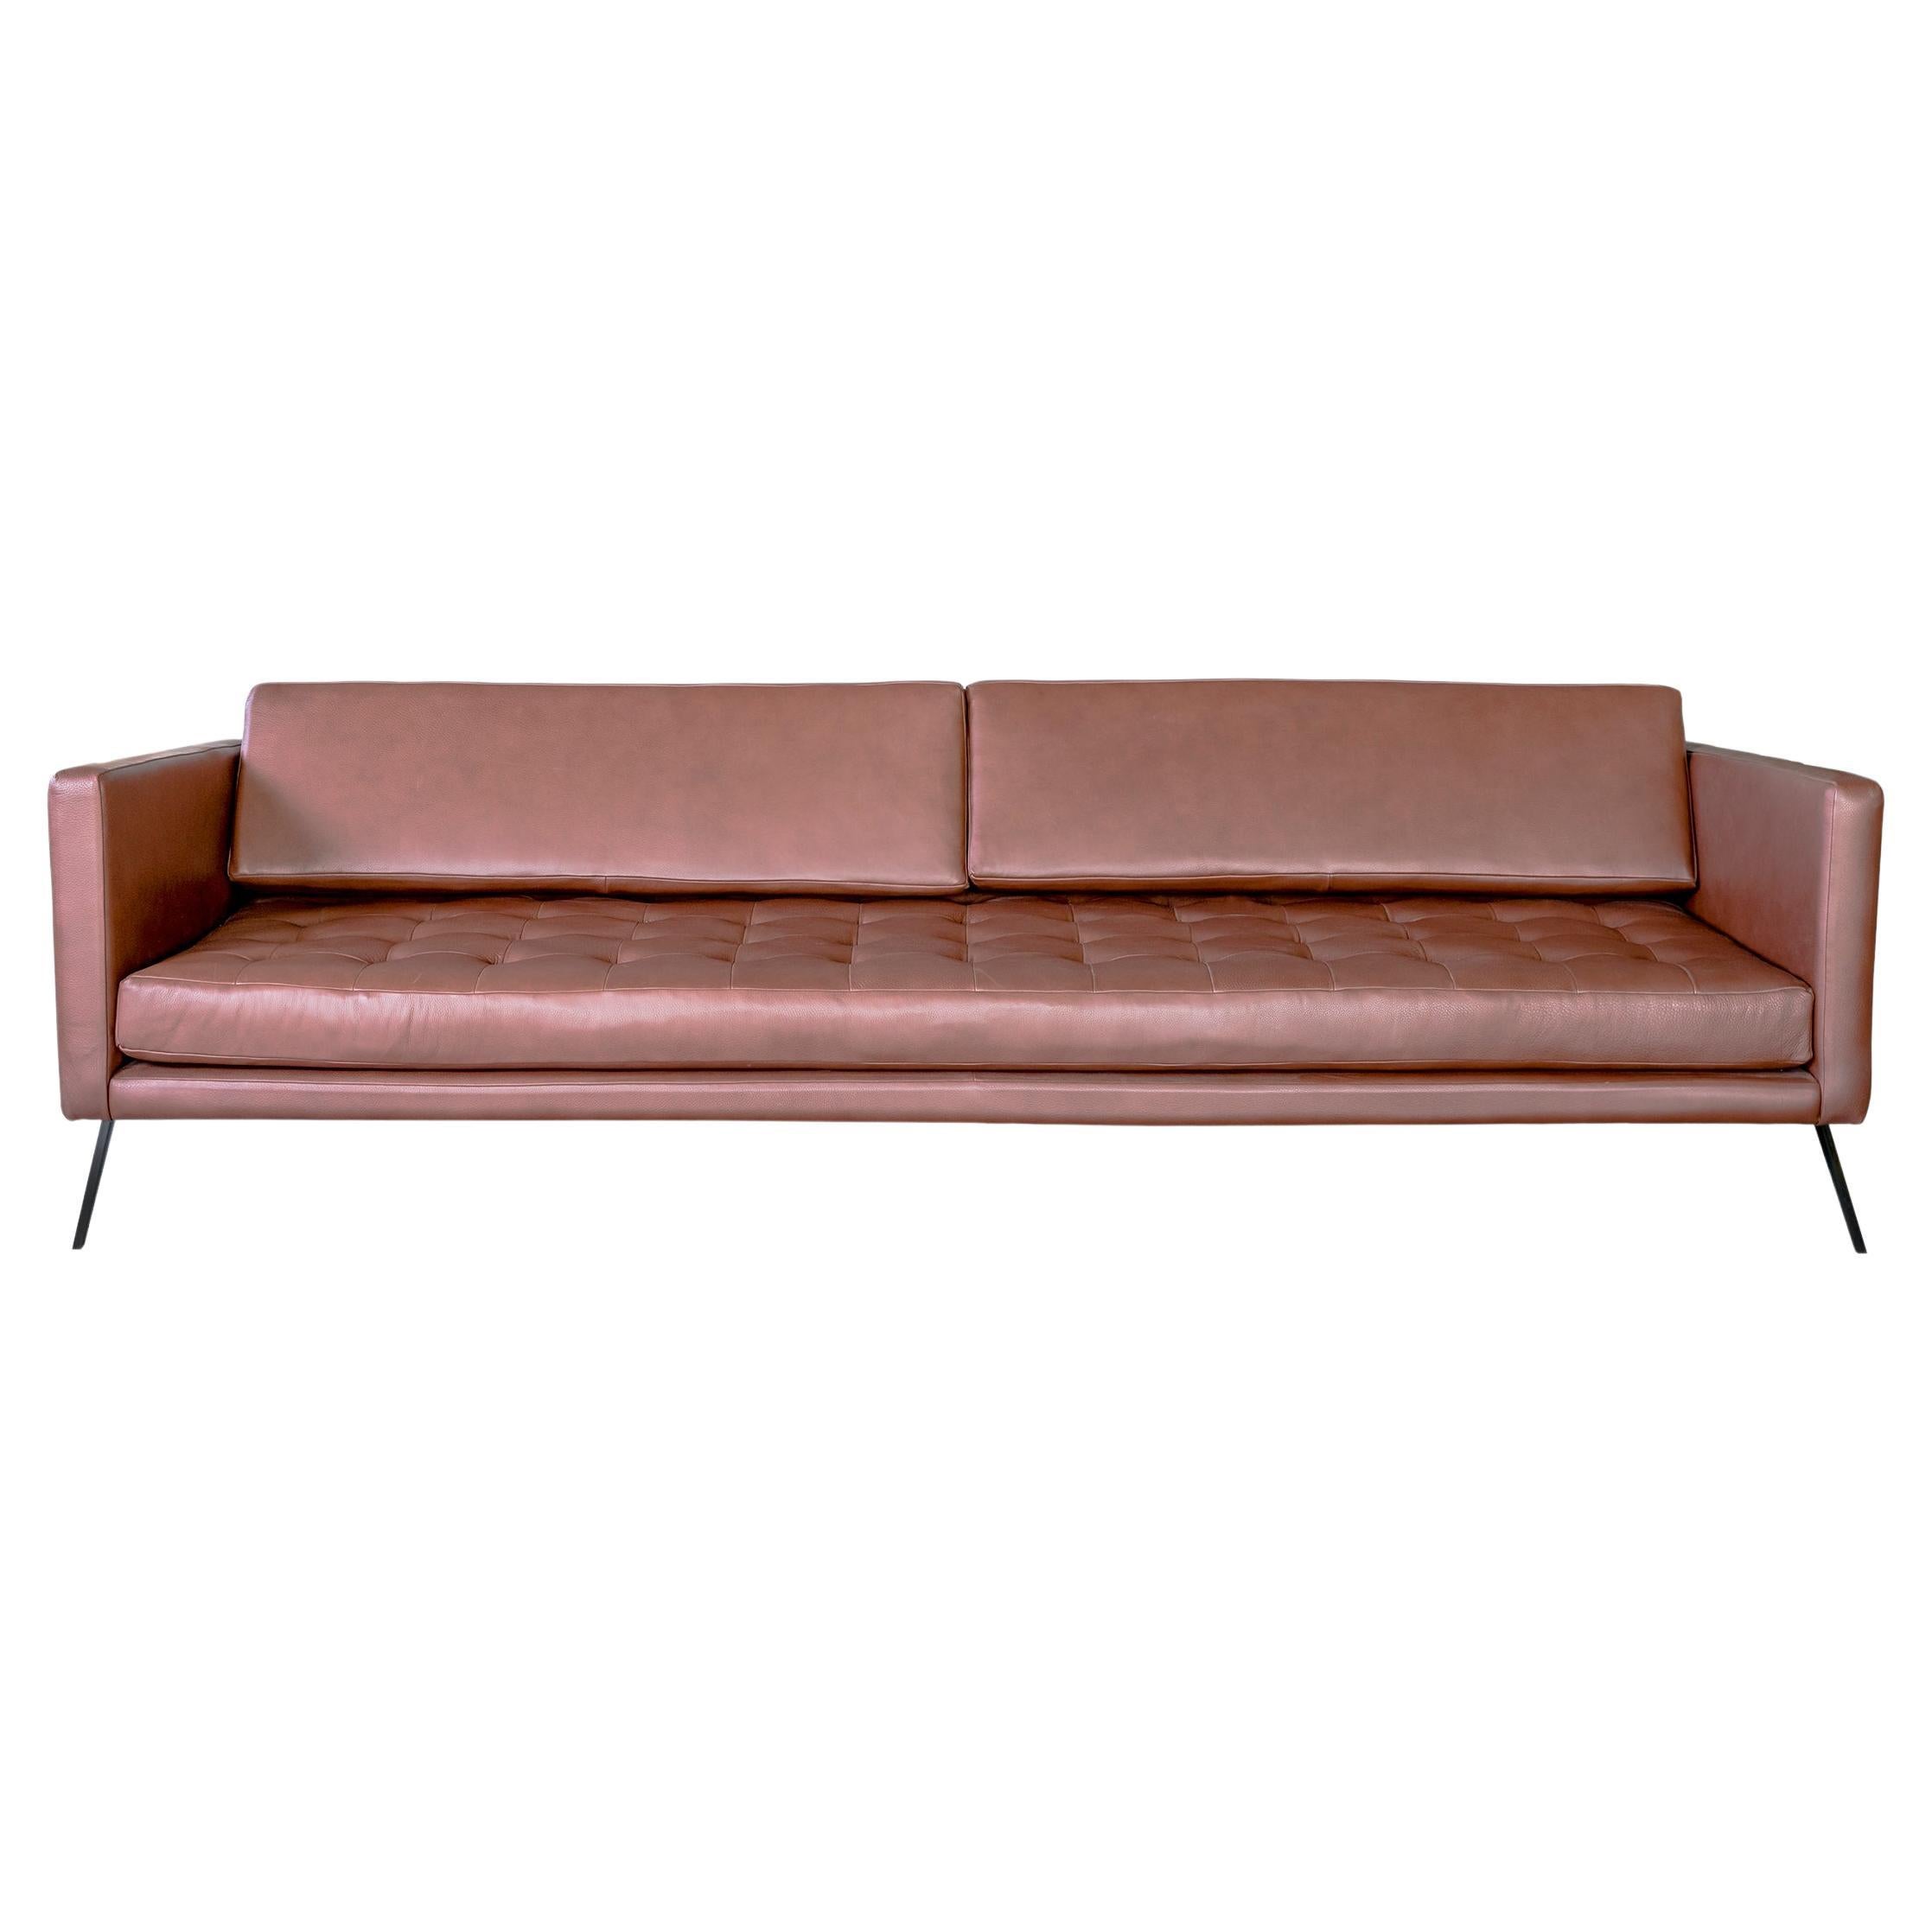 Mantis Sofa by Atra Design